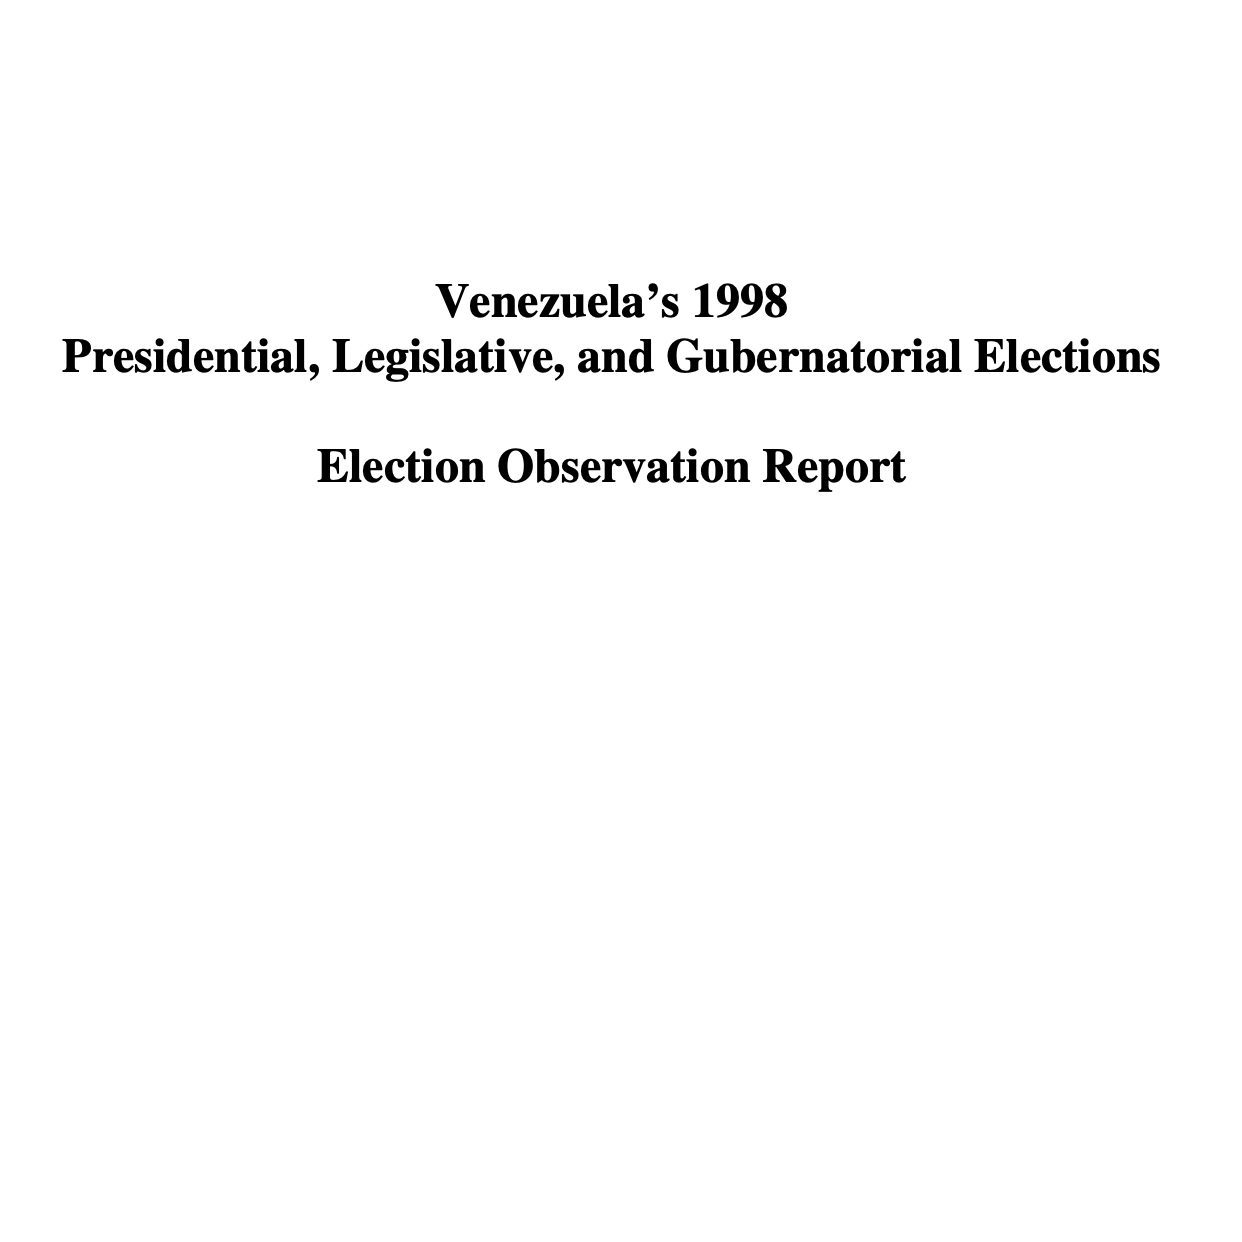 Venezuela’s 1998 Presidential, Legislative, and Gubernatorial Elections Election Observation Report